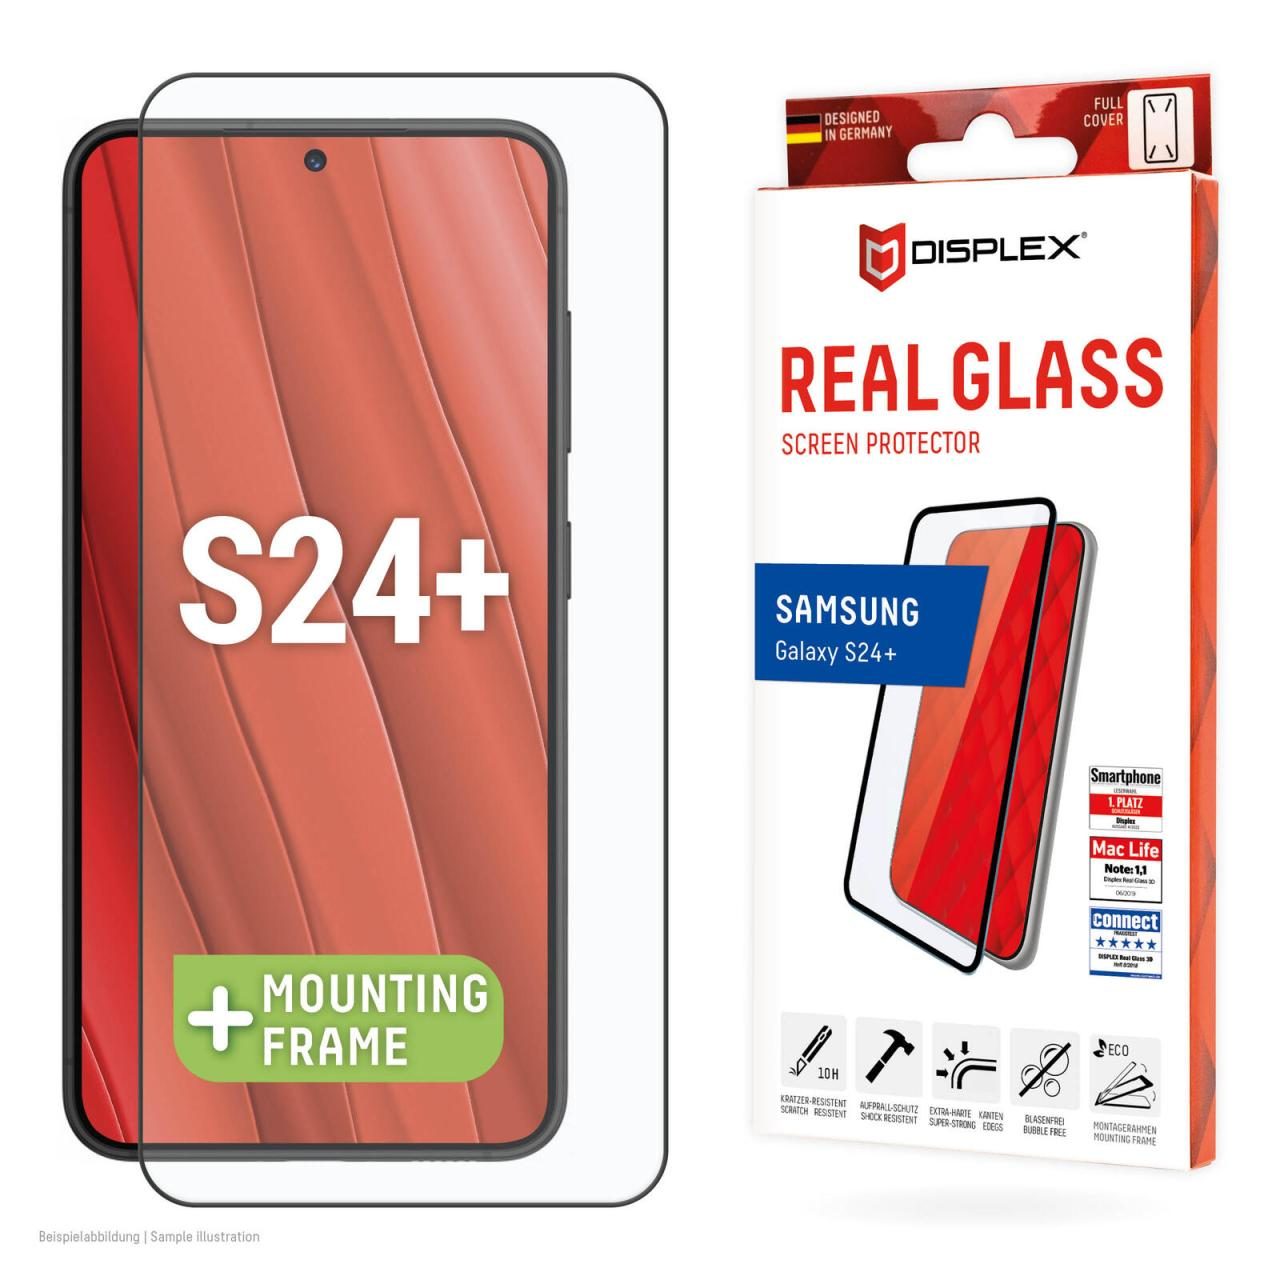 DISPLEX Real Glass für das Samsung Galaxy S24+ von Displex